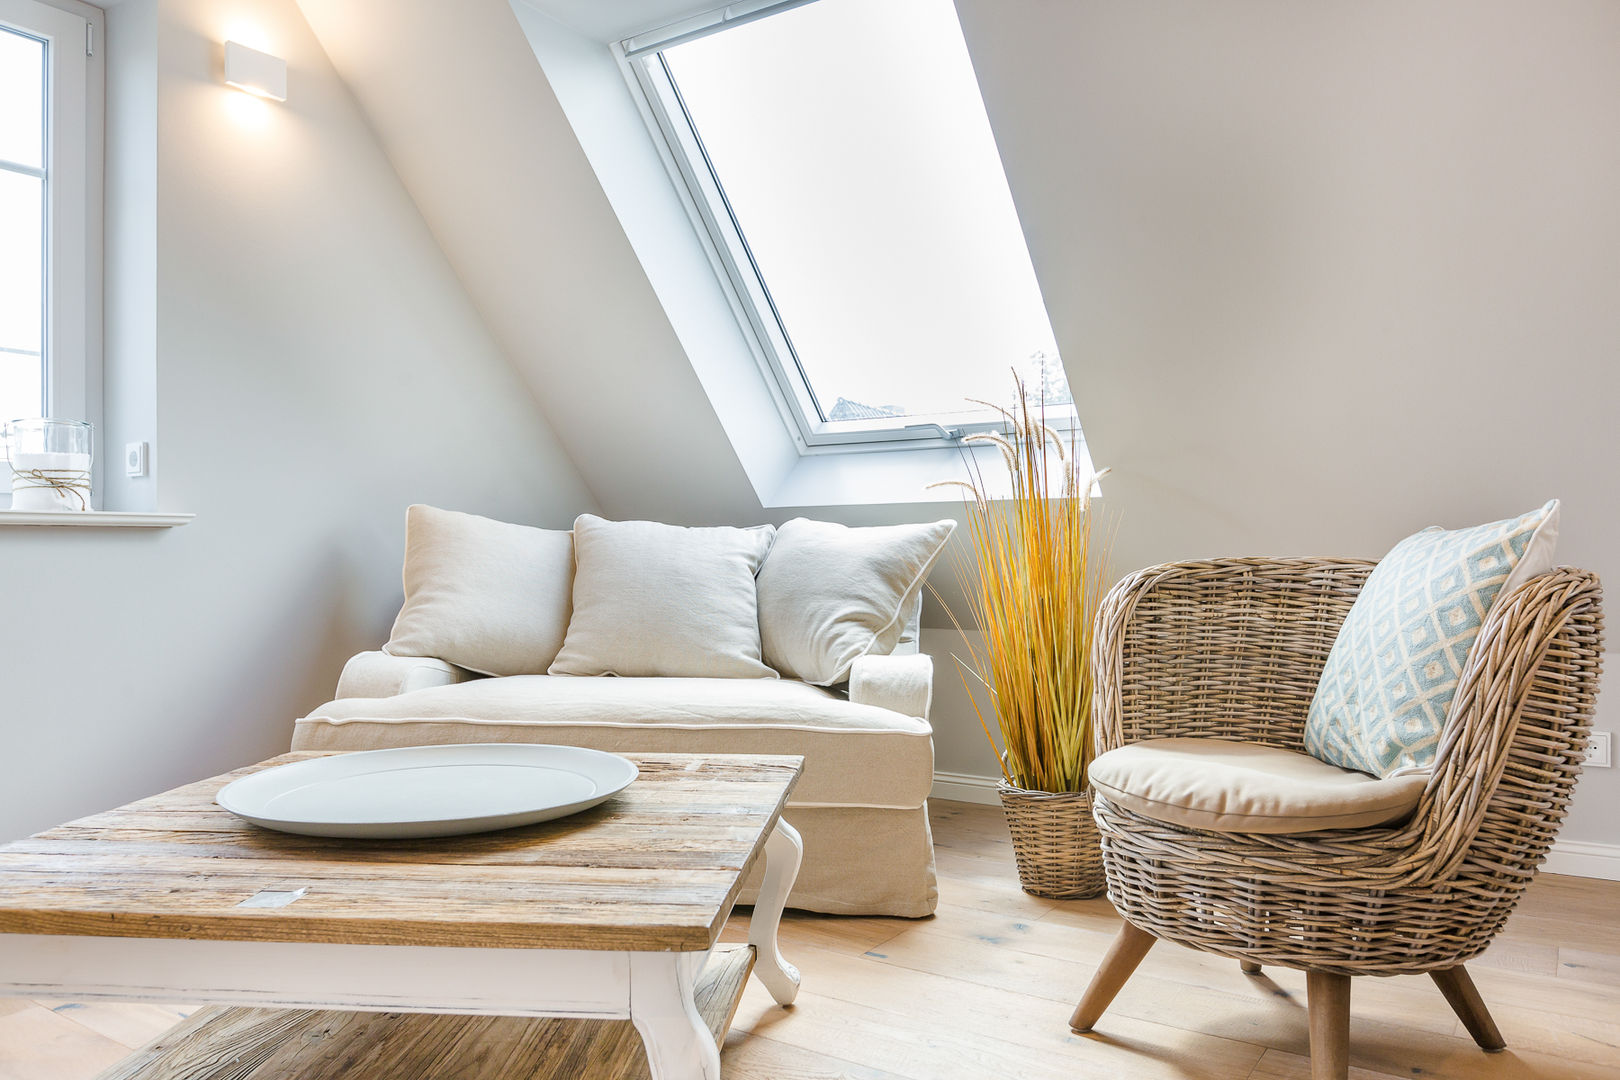 Einrichtung einer Dachgeschosswohnung in Westerland auf Sylt, Home Staging Sylt GmbH Home Staging Sylt GmbH ห้องนั่งเล่น